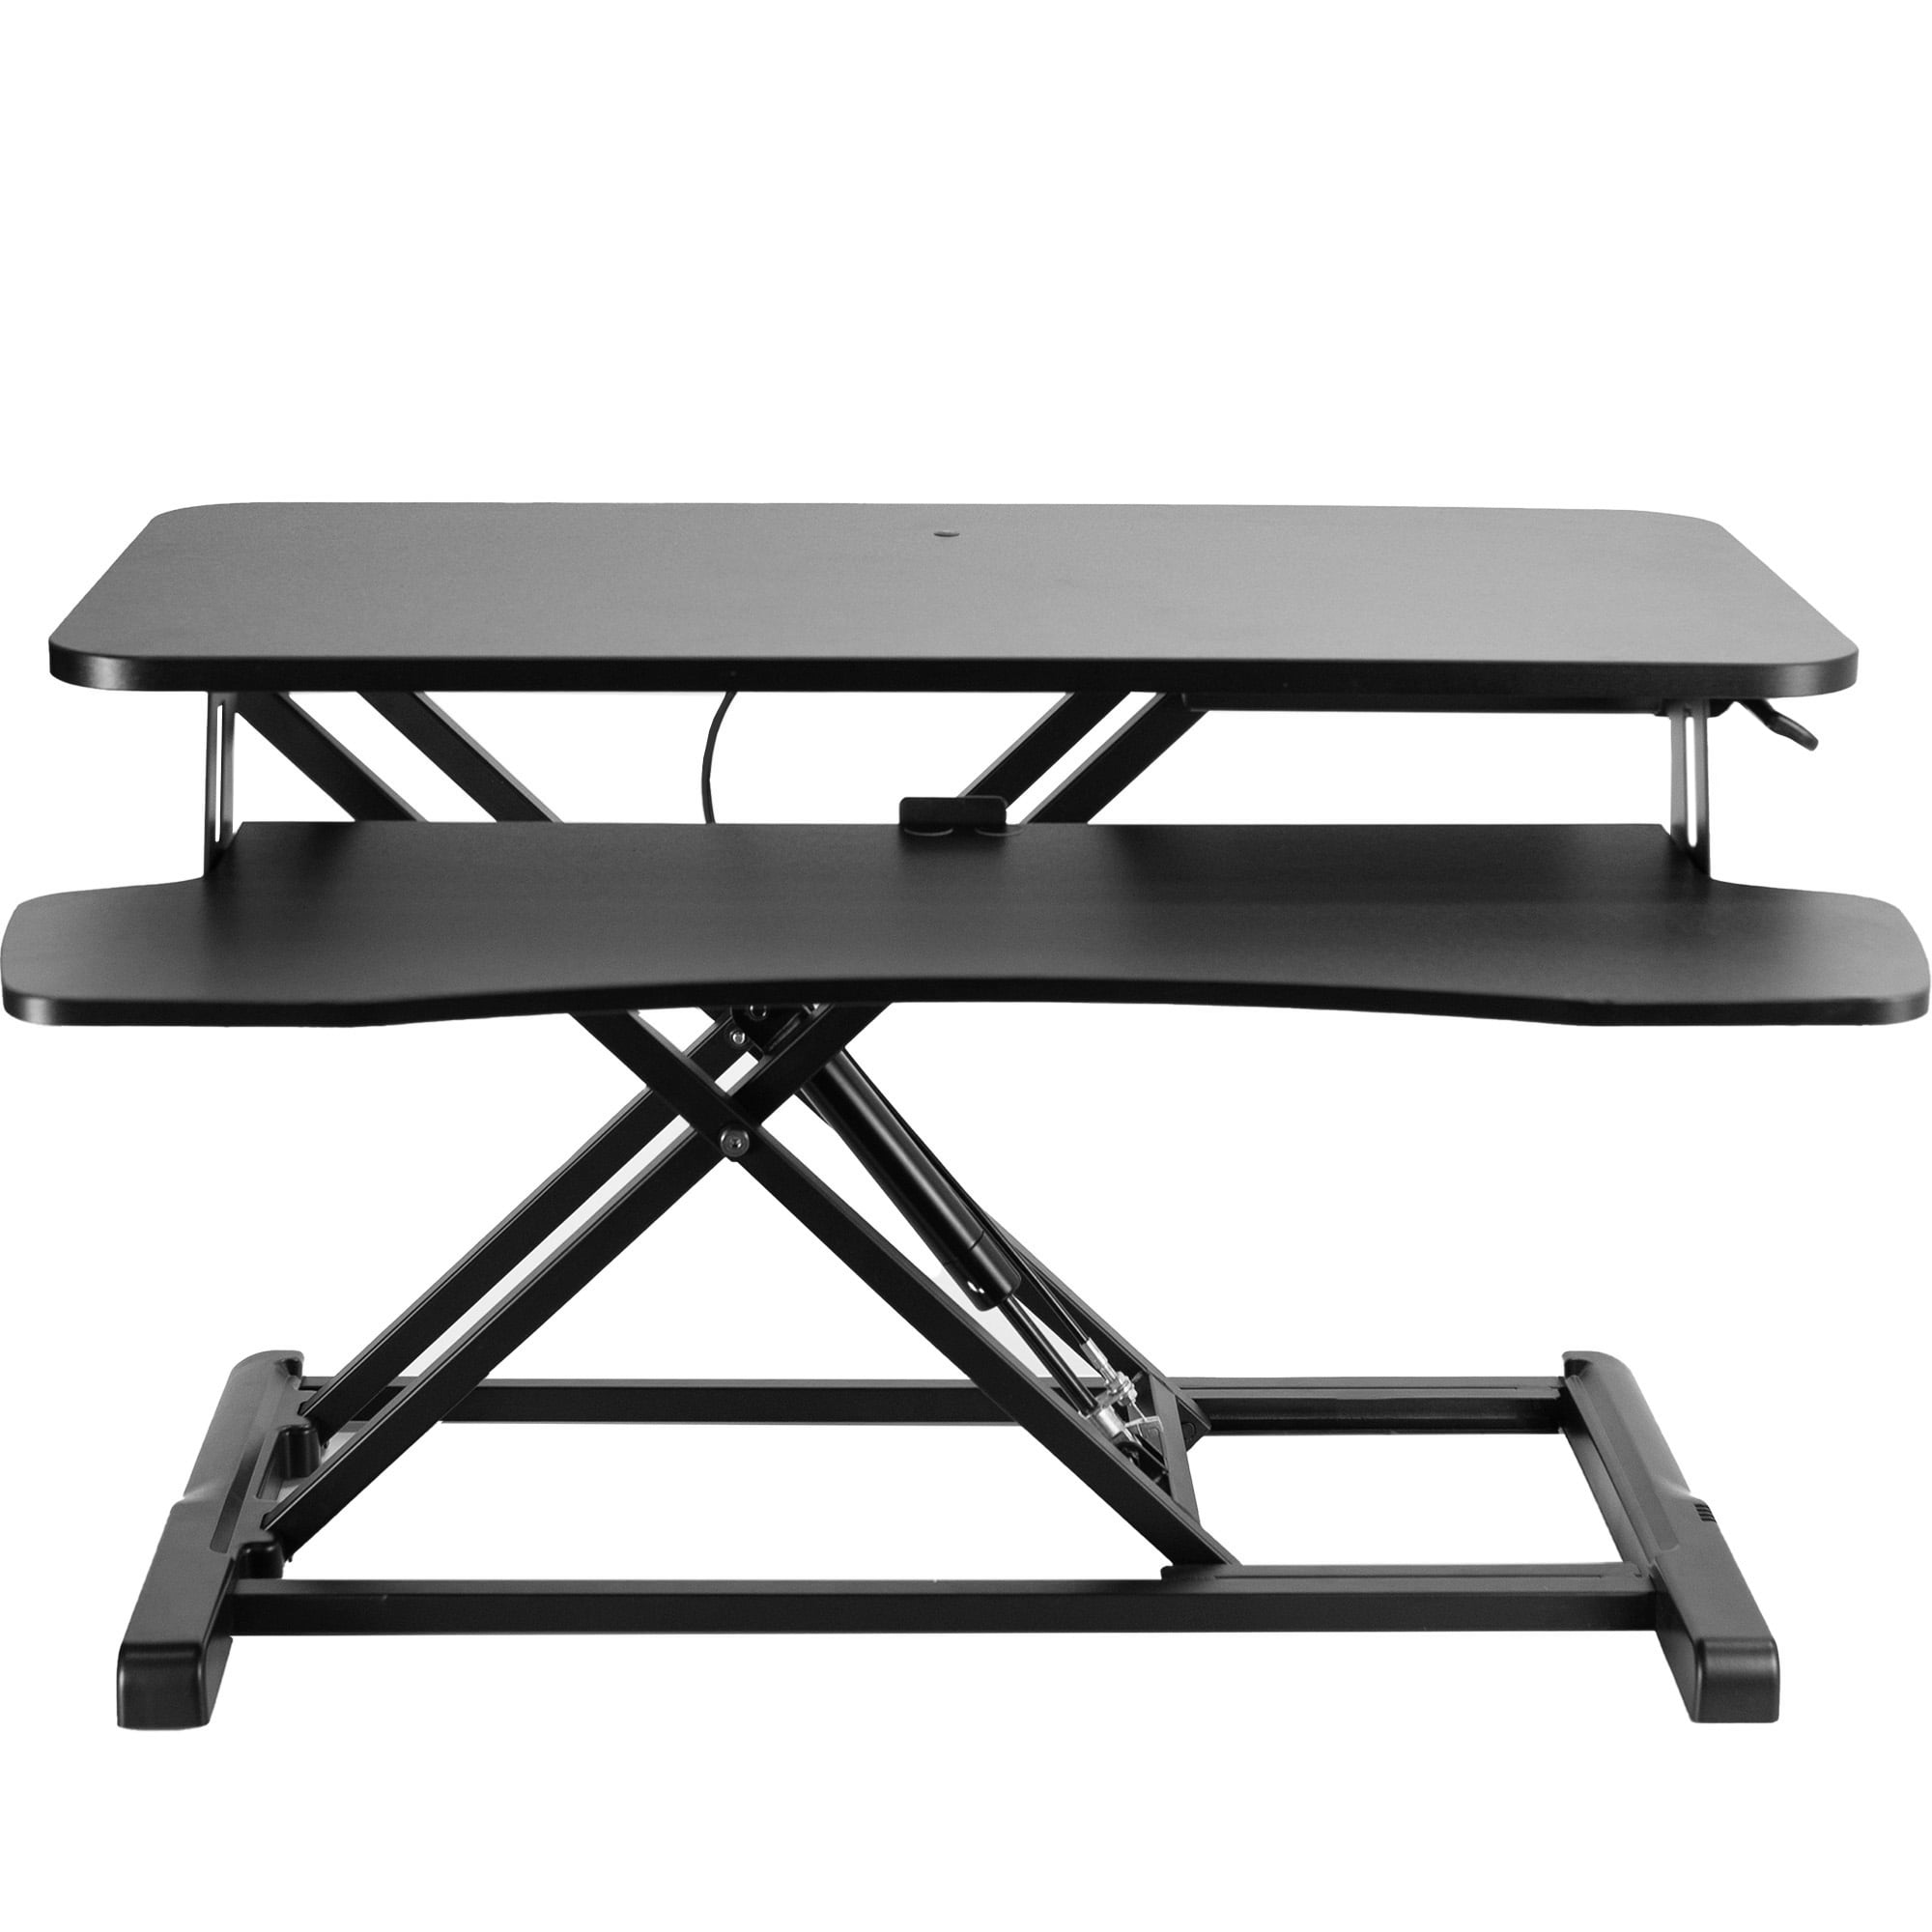 ATUMTEK STANDING DESK CONVERTER,32” Height Adjust Sit To Stand Desk Riser.  Black